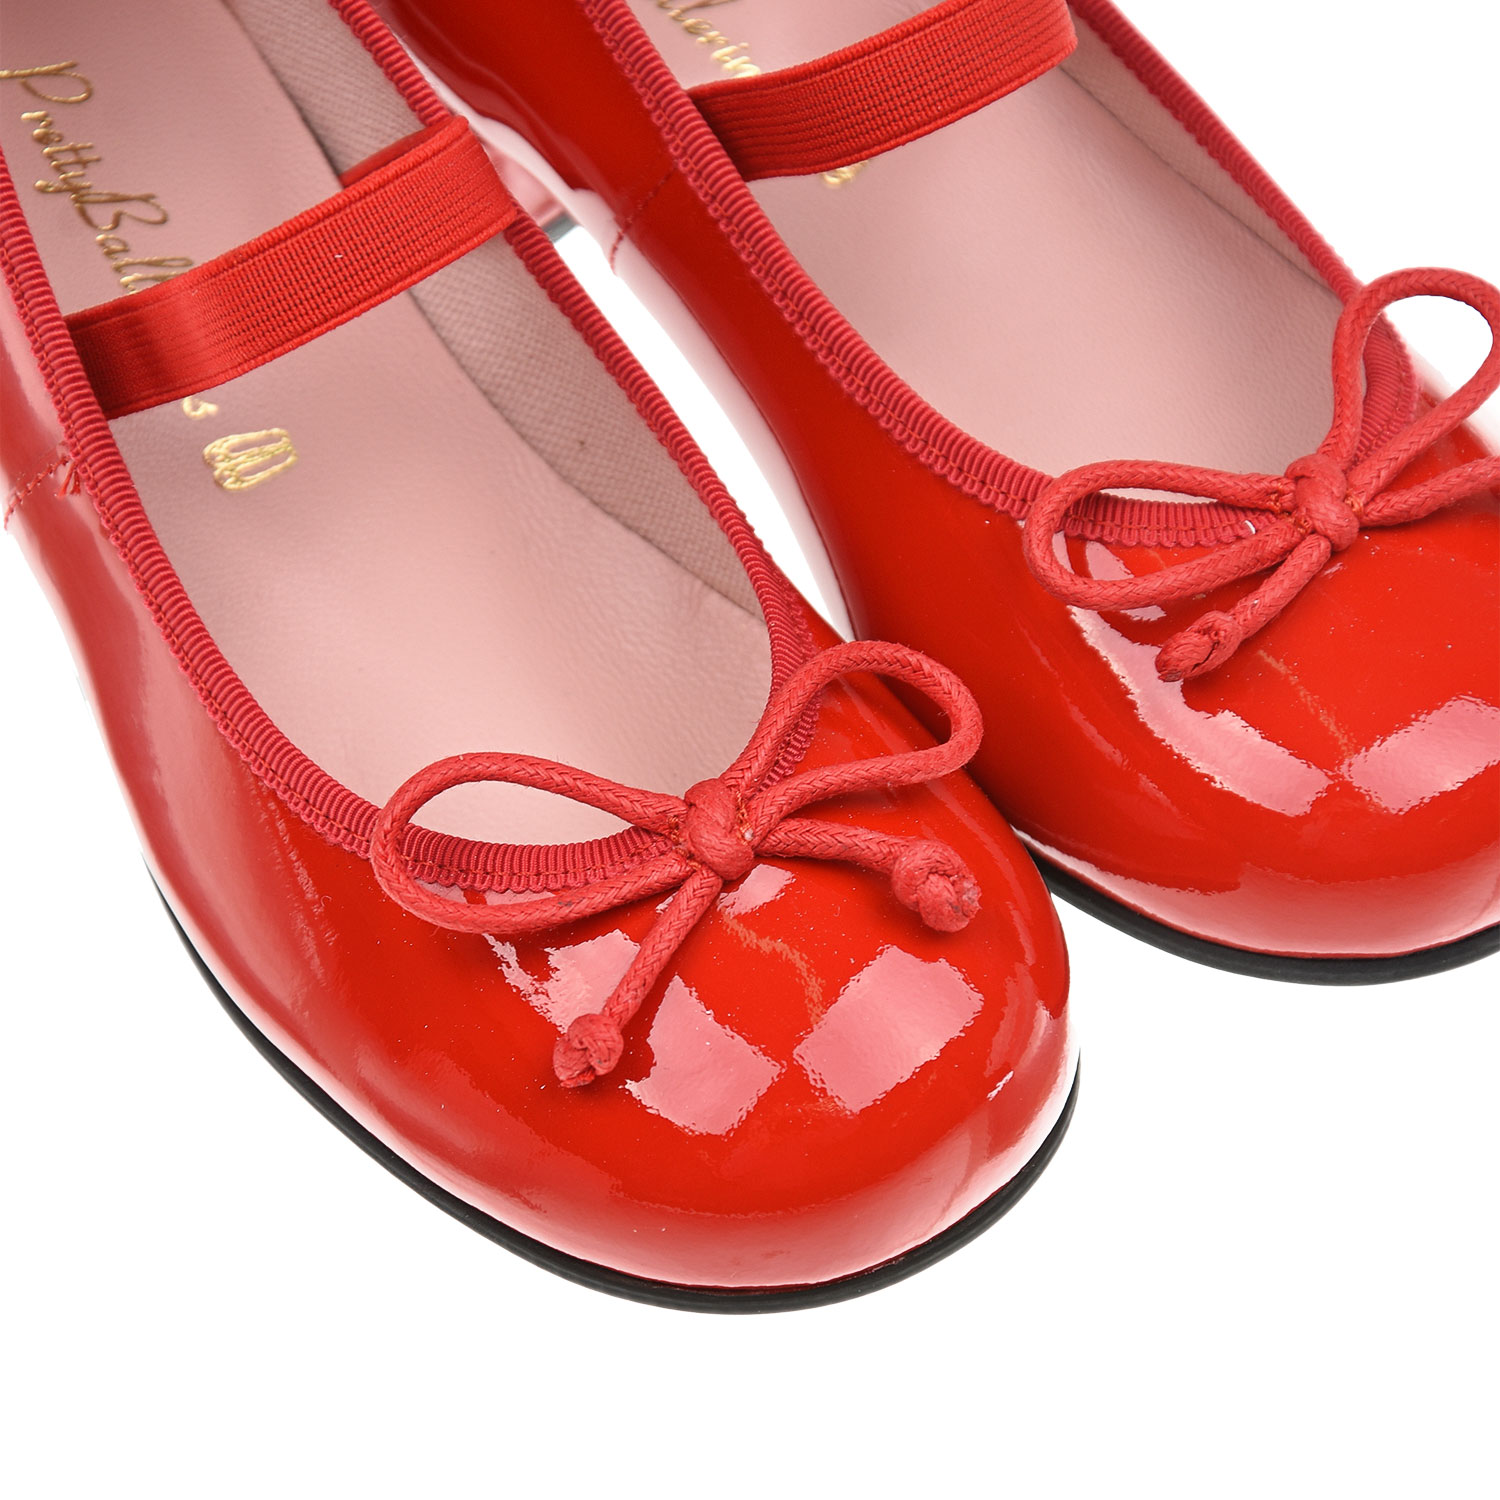 Красные туфли в школу. Туфли с бантиком. Красные туфли с бантом. Красные туфли с бантиком. Красные туфли для девочки.